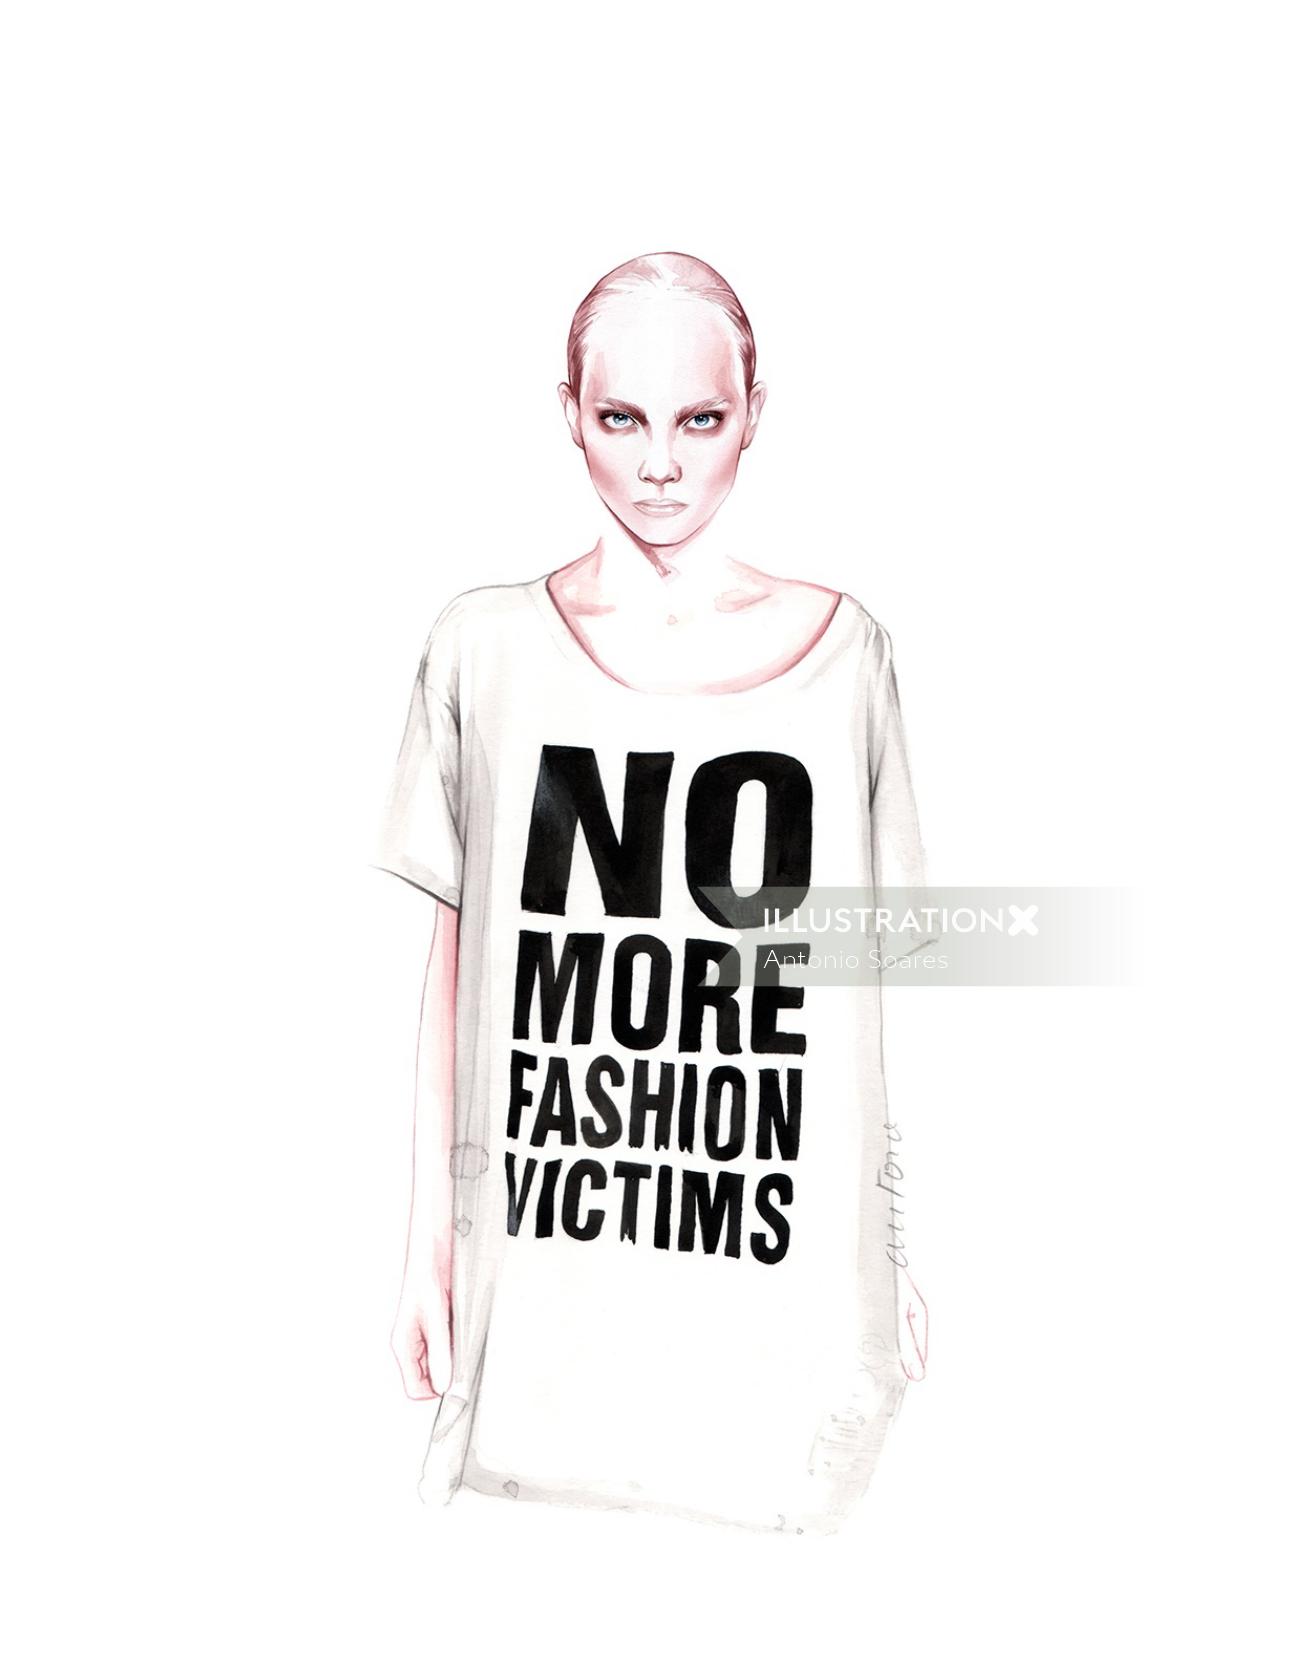 No more fashion victims art by Antonio Soares